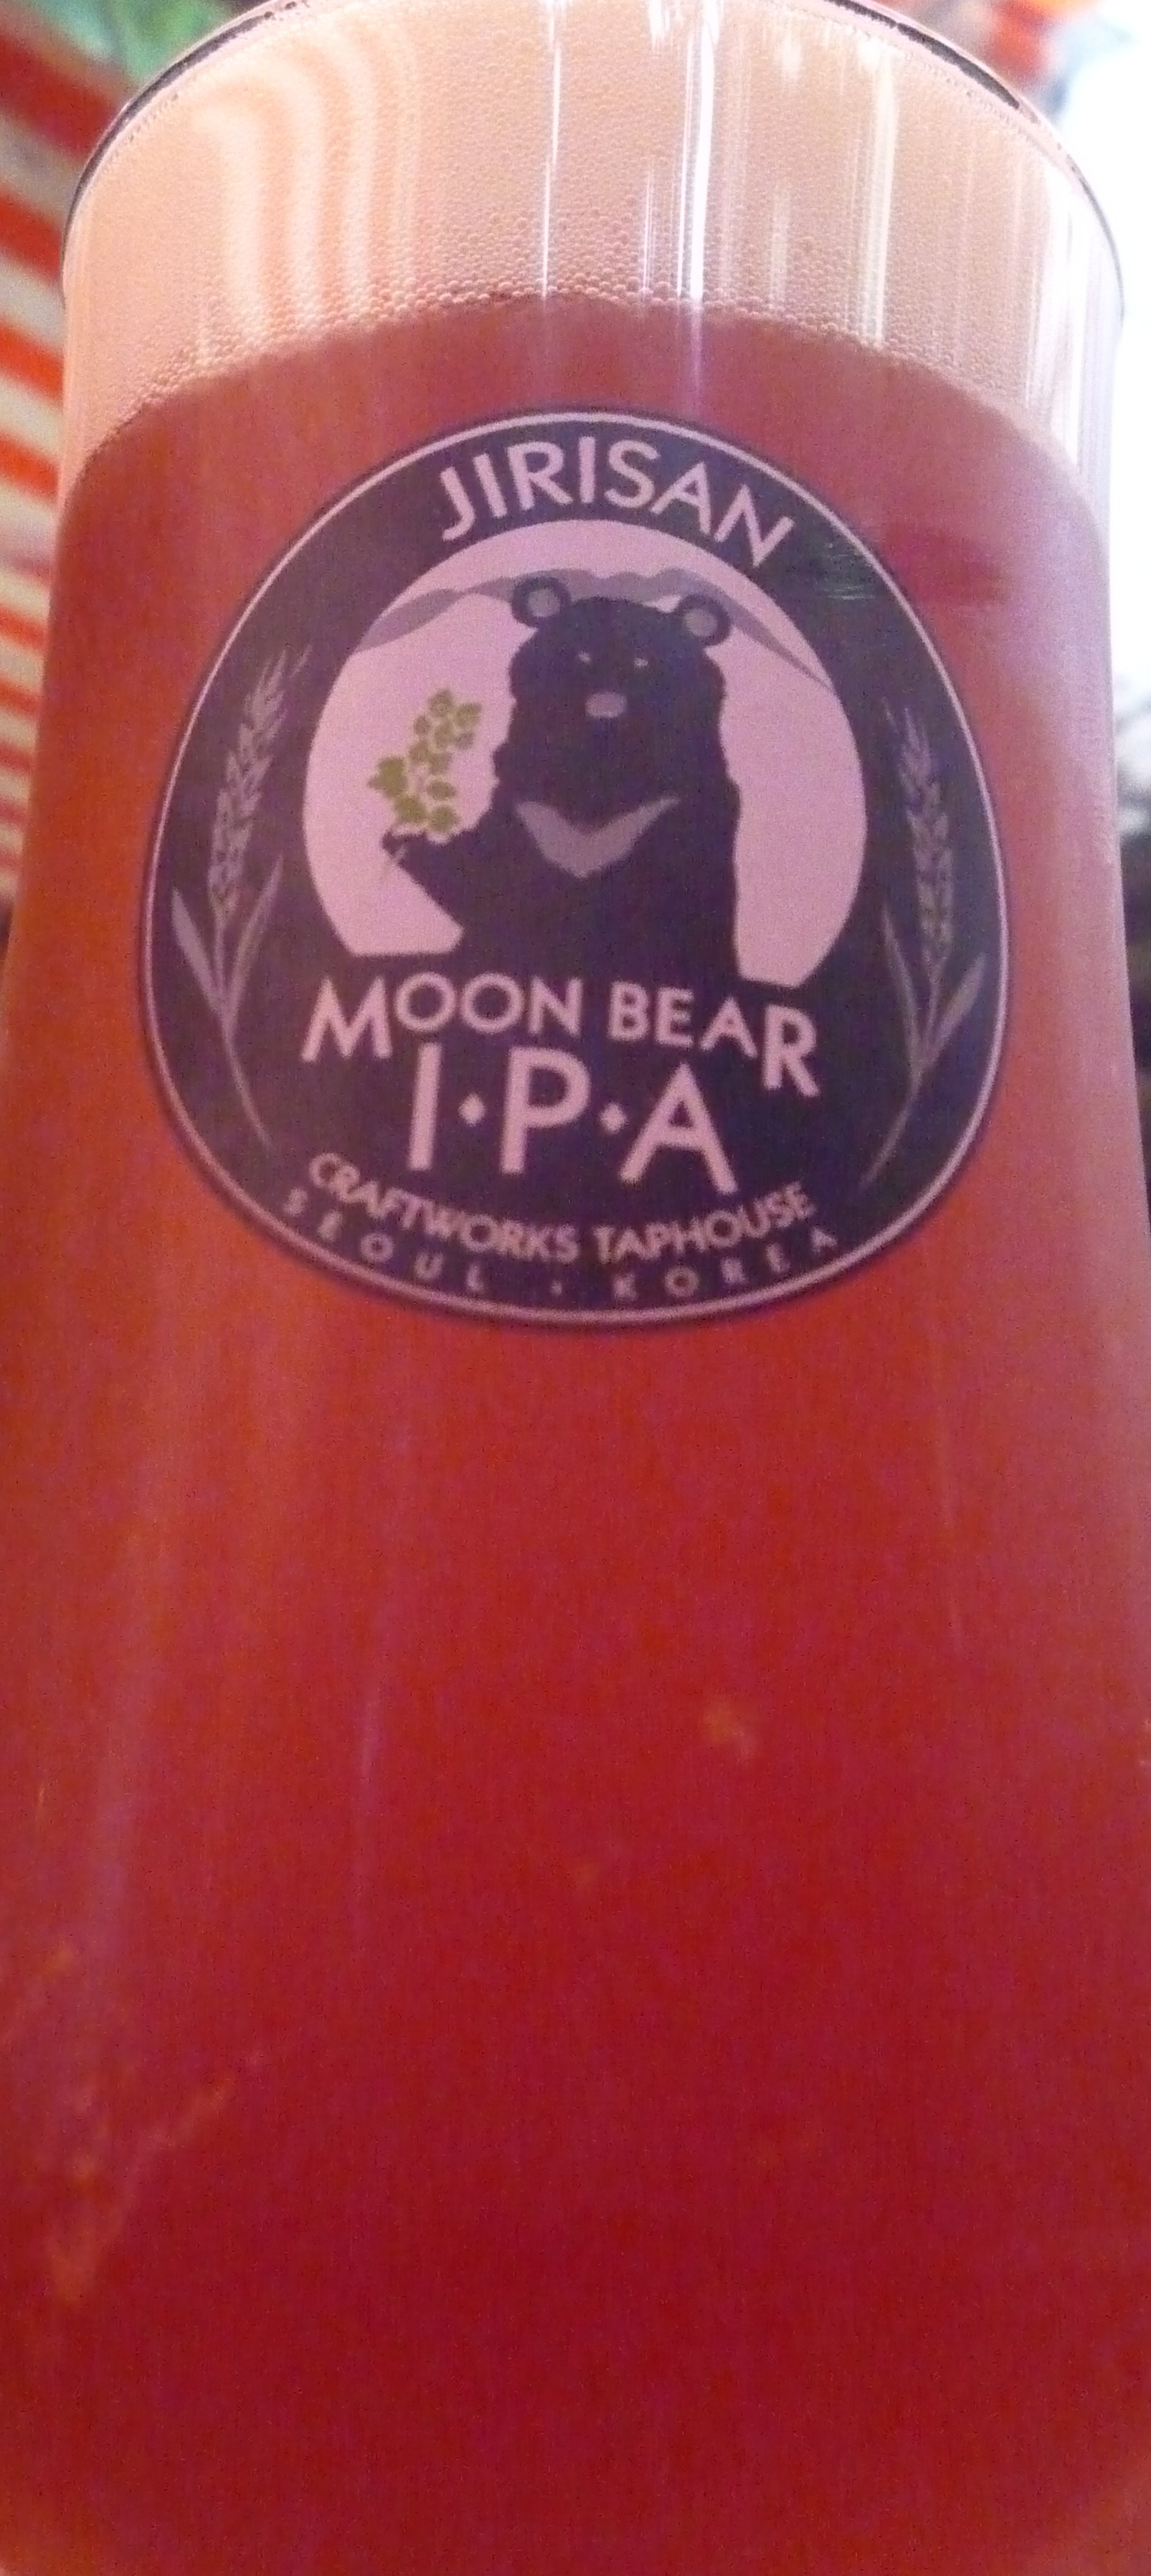 Moon Beer IPA